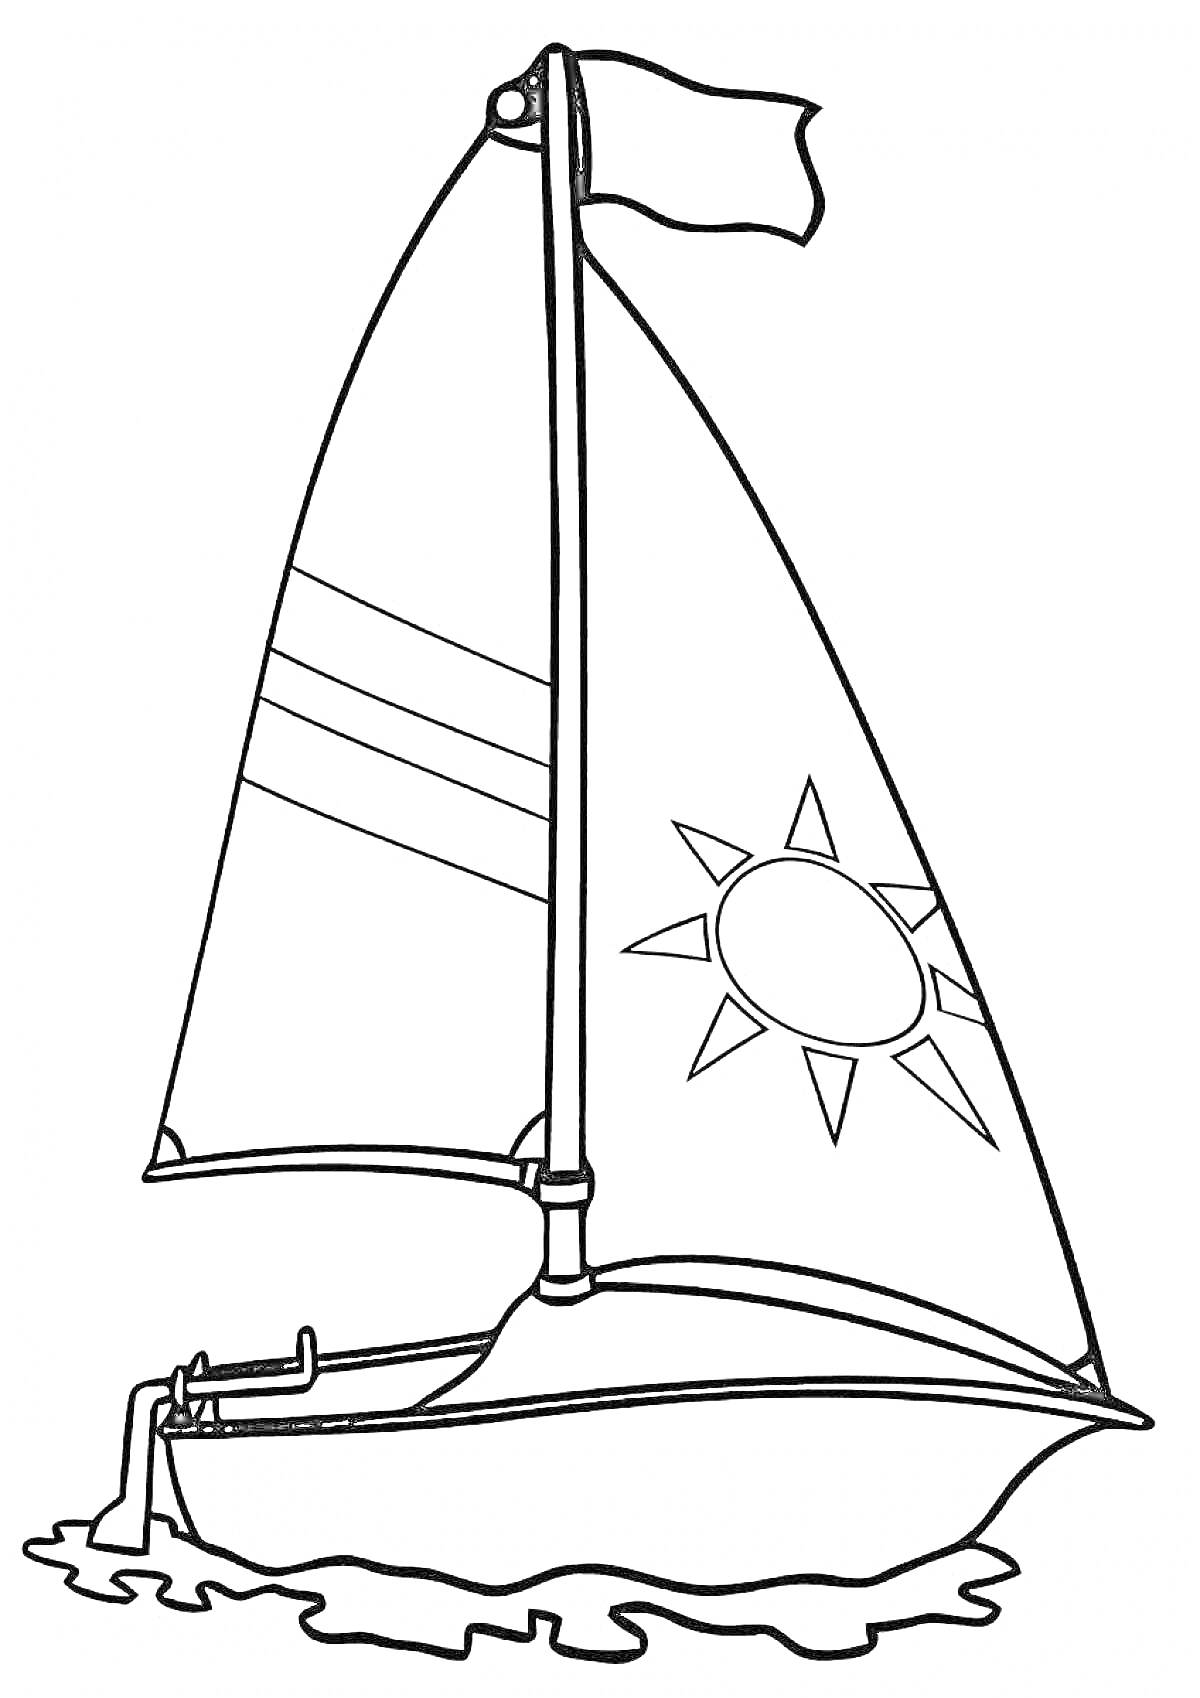 Раскраска Парусник на воде с флагом и изображением солнца на парусе